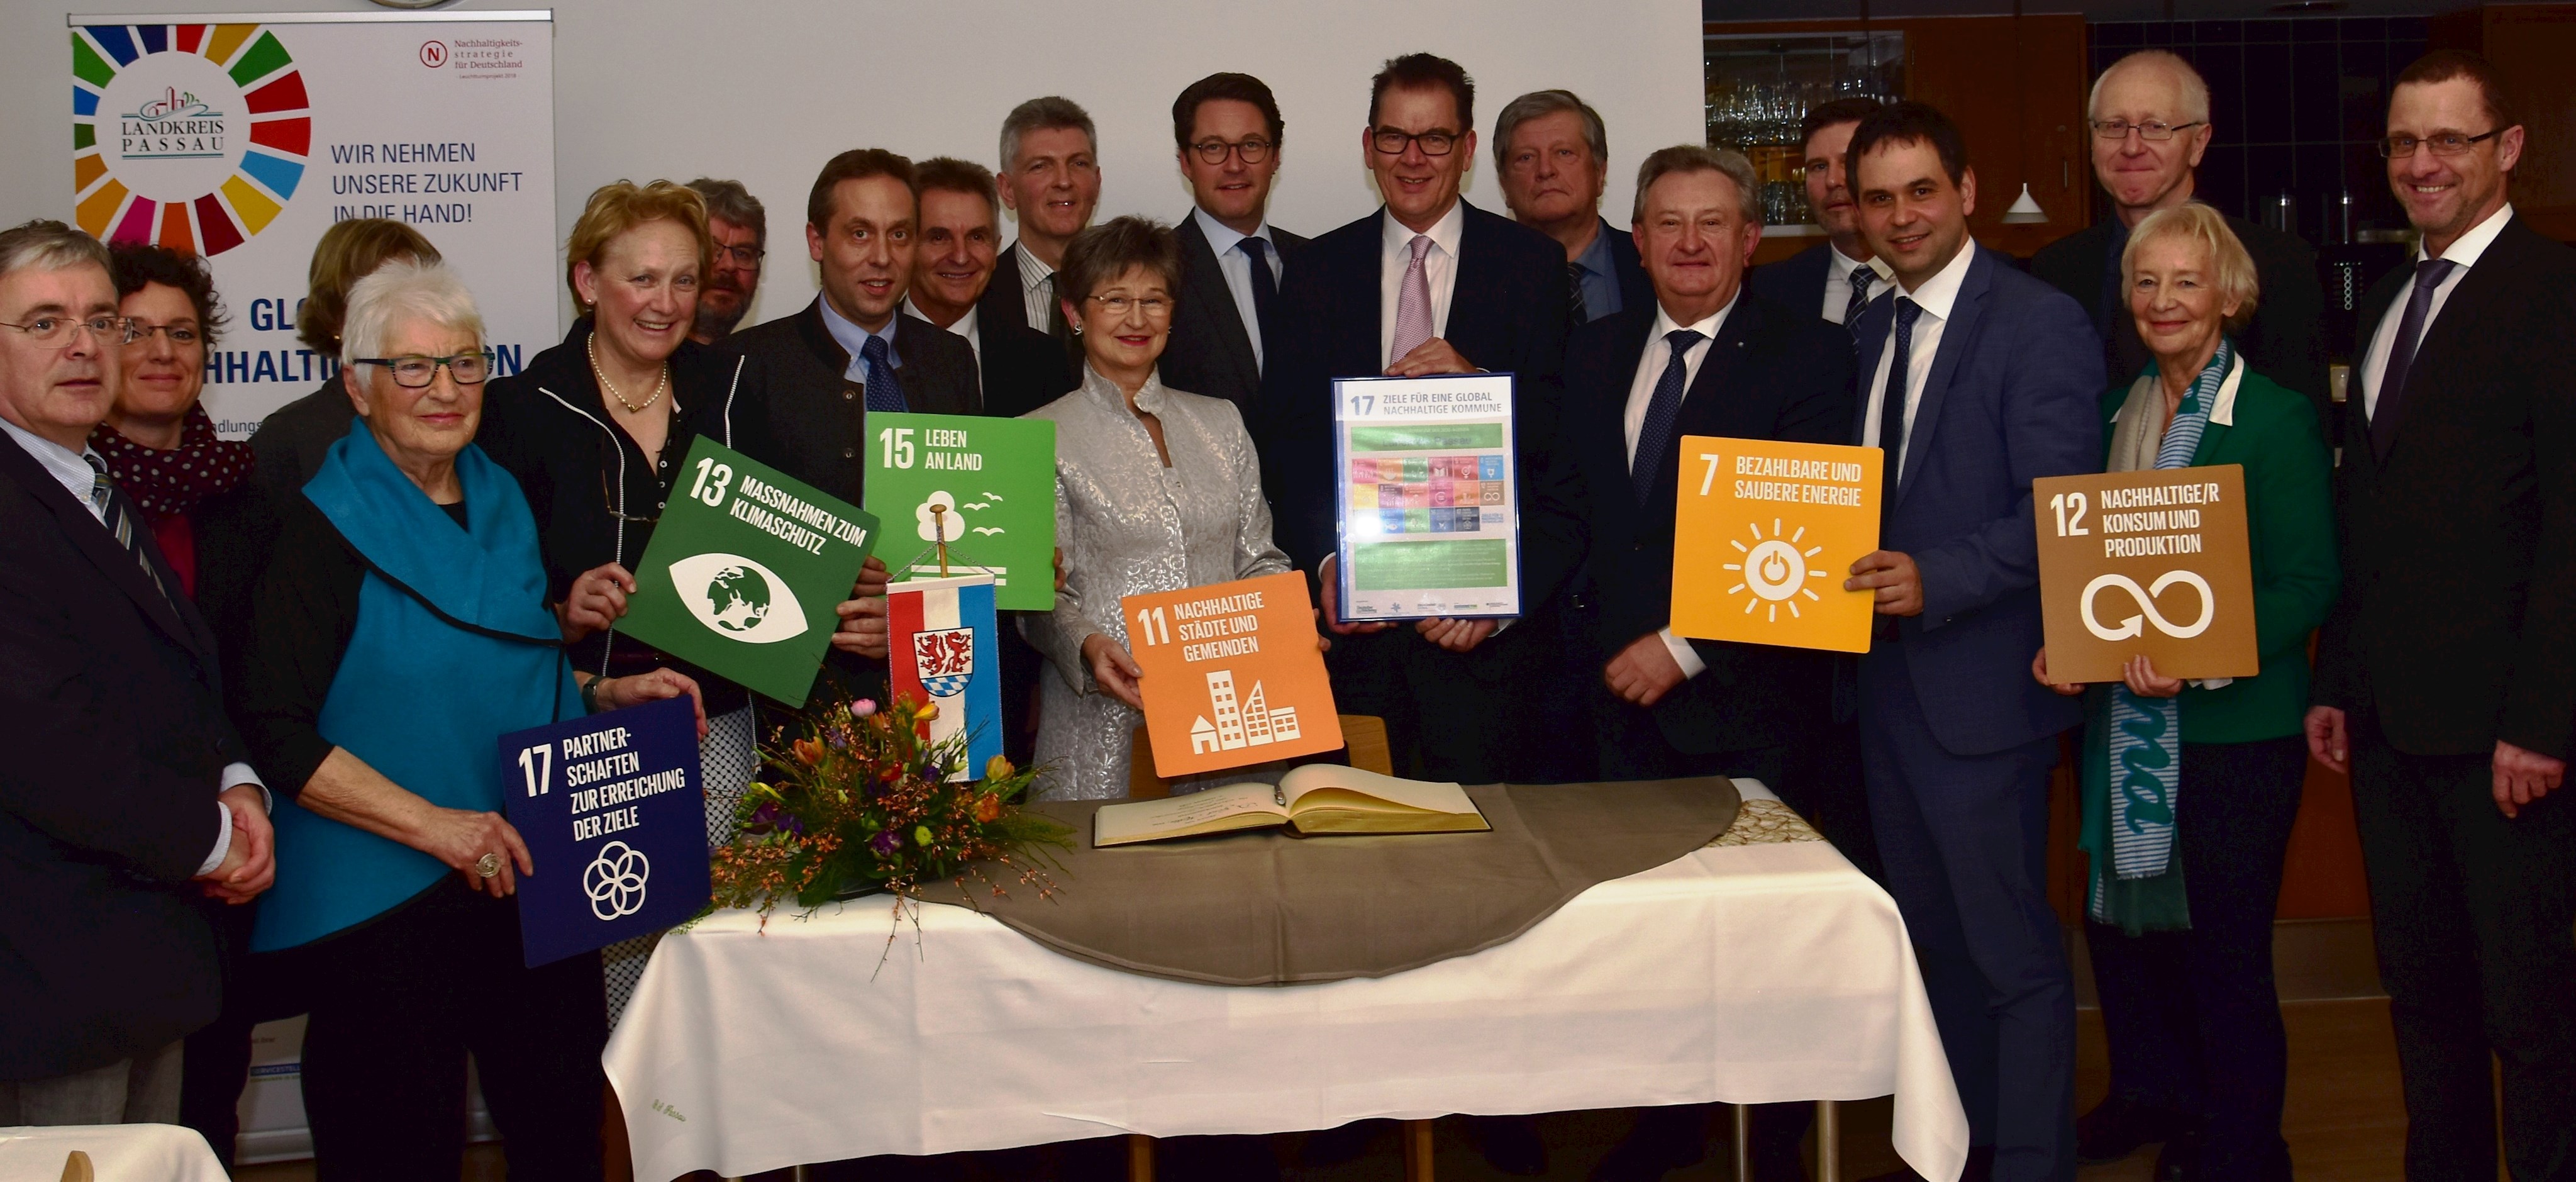 Mit einer Urkunde würdigte Bundesentwicklungsminister Dr. Gerd Müller das Engagement des Landkreises Passau beim Thema Nachhaltigkeit.